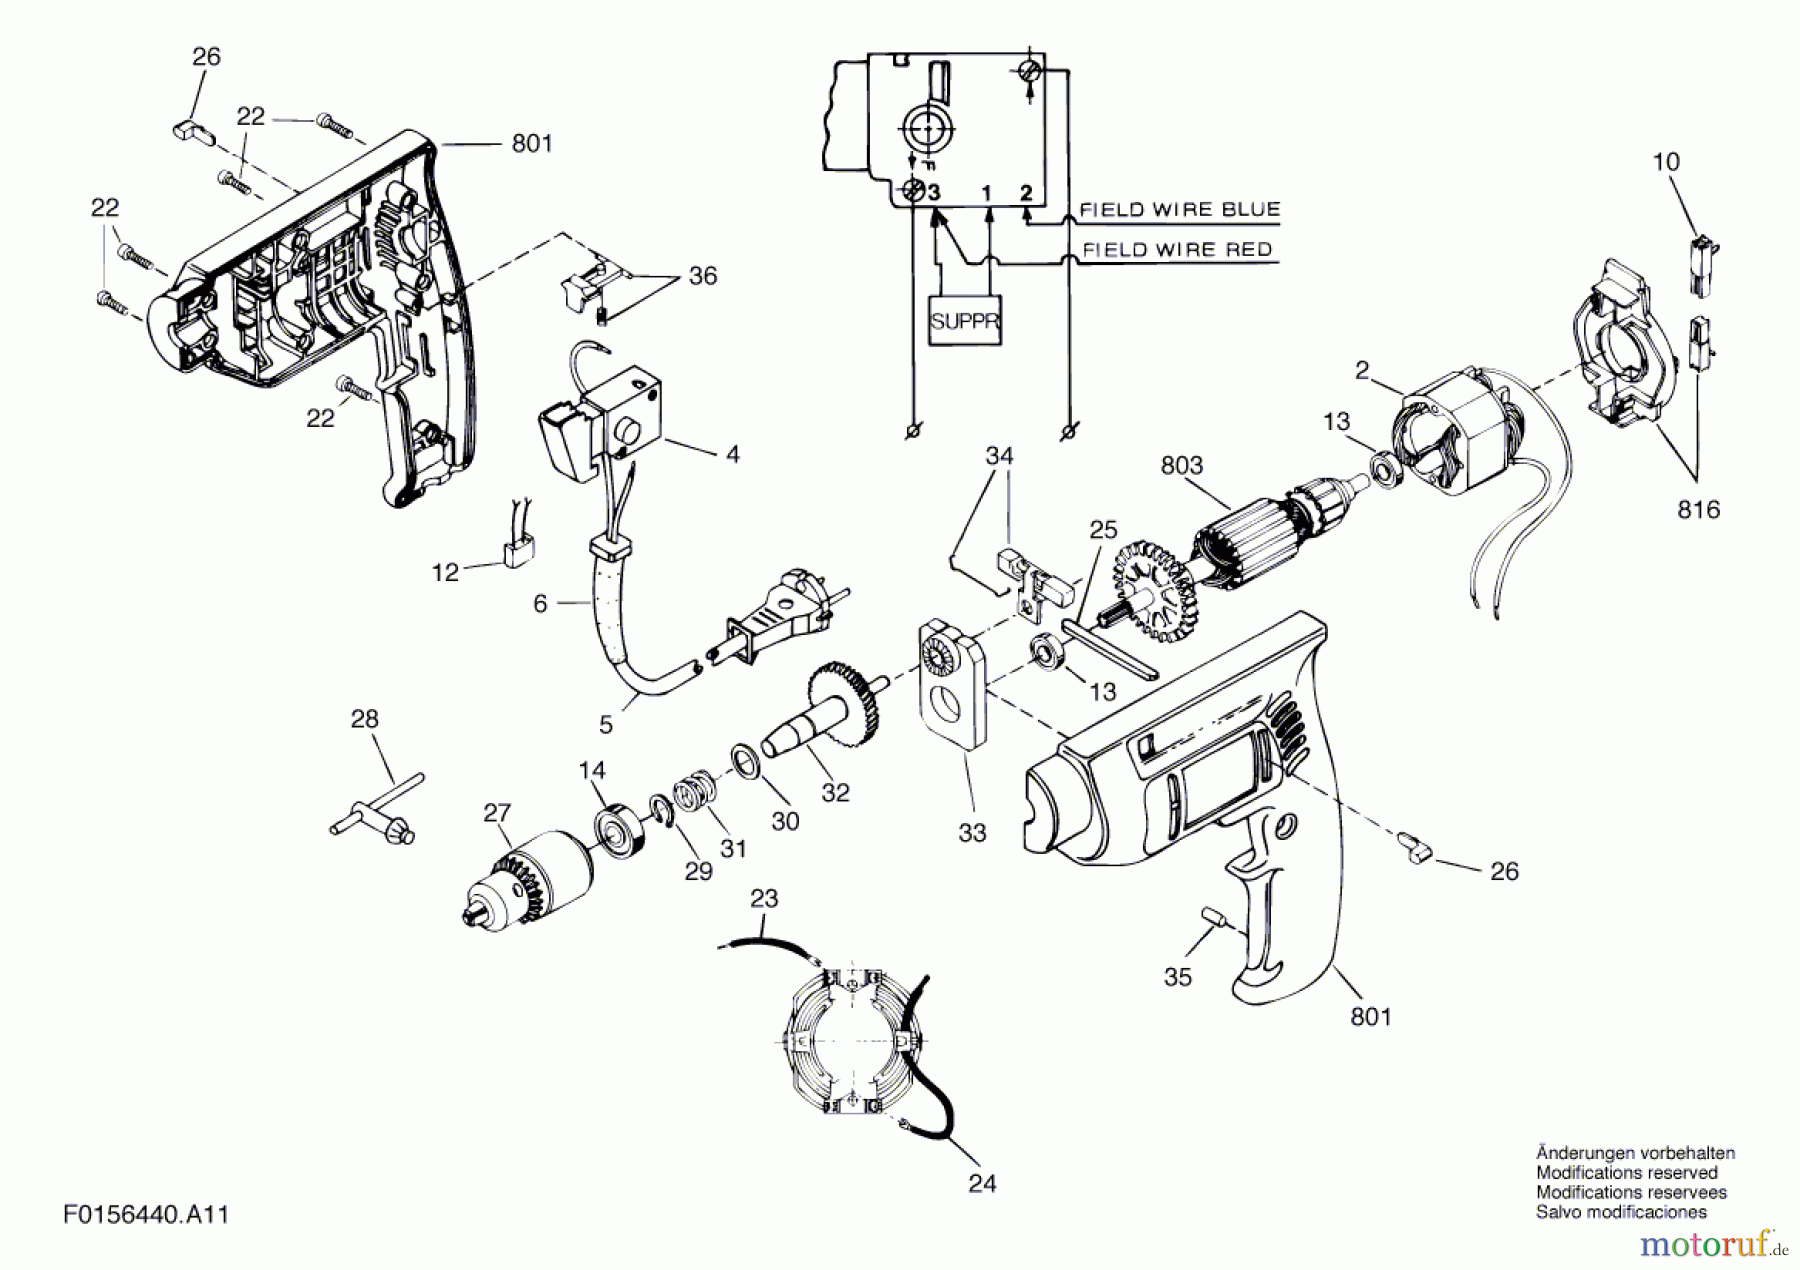  Bosch Werkzeug Schlagbohrmaschine 6440 H1 Seite 1